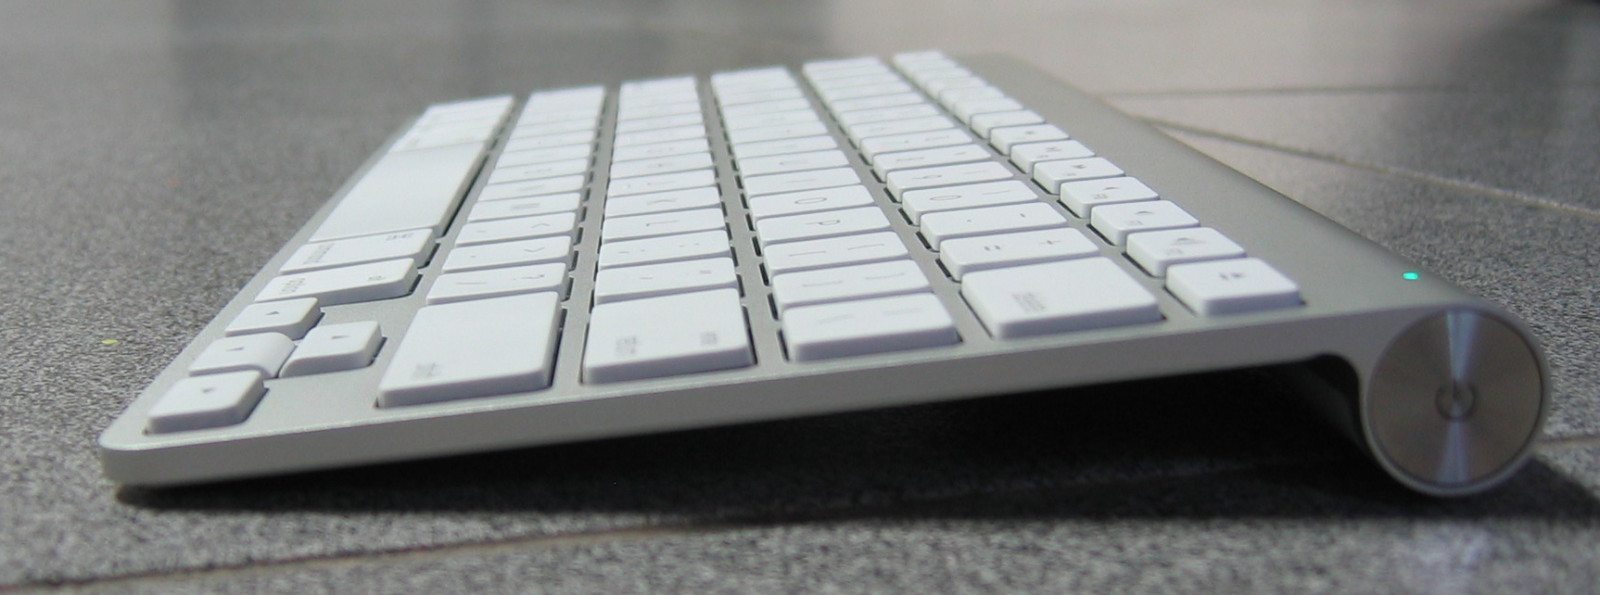 Can iPad keyboard dock pair with new Mac Mini?